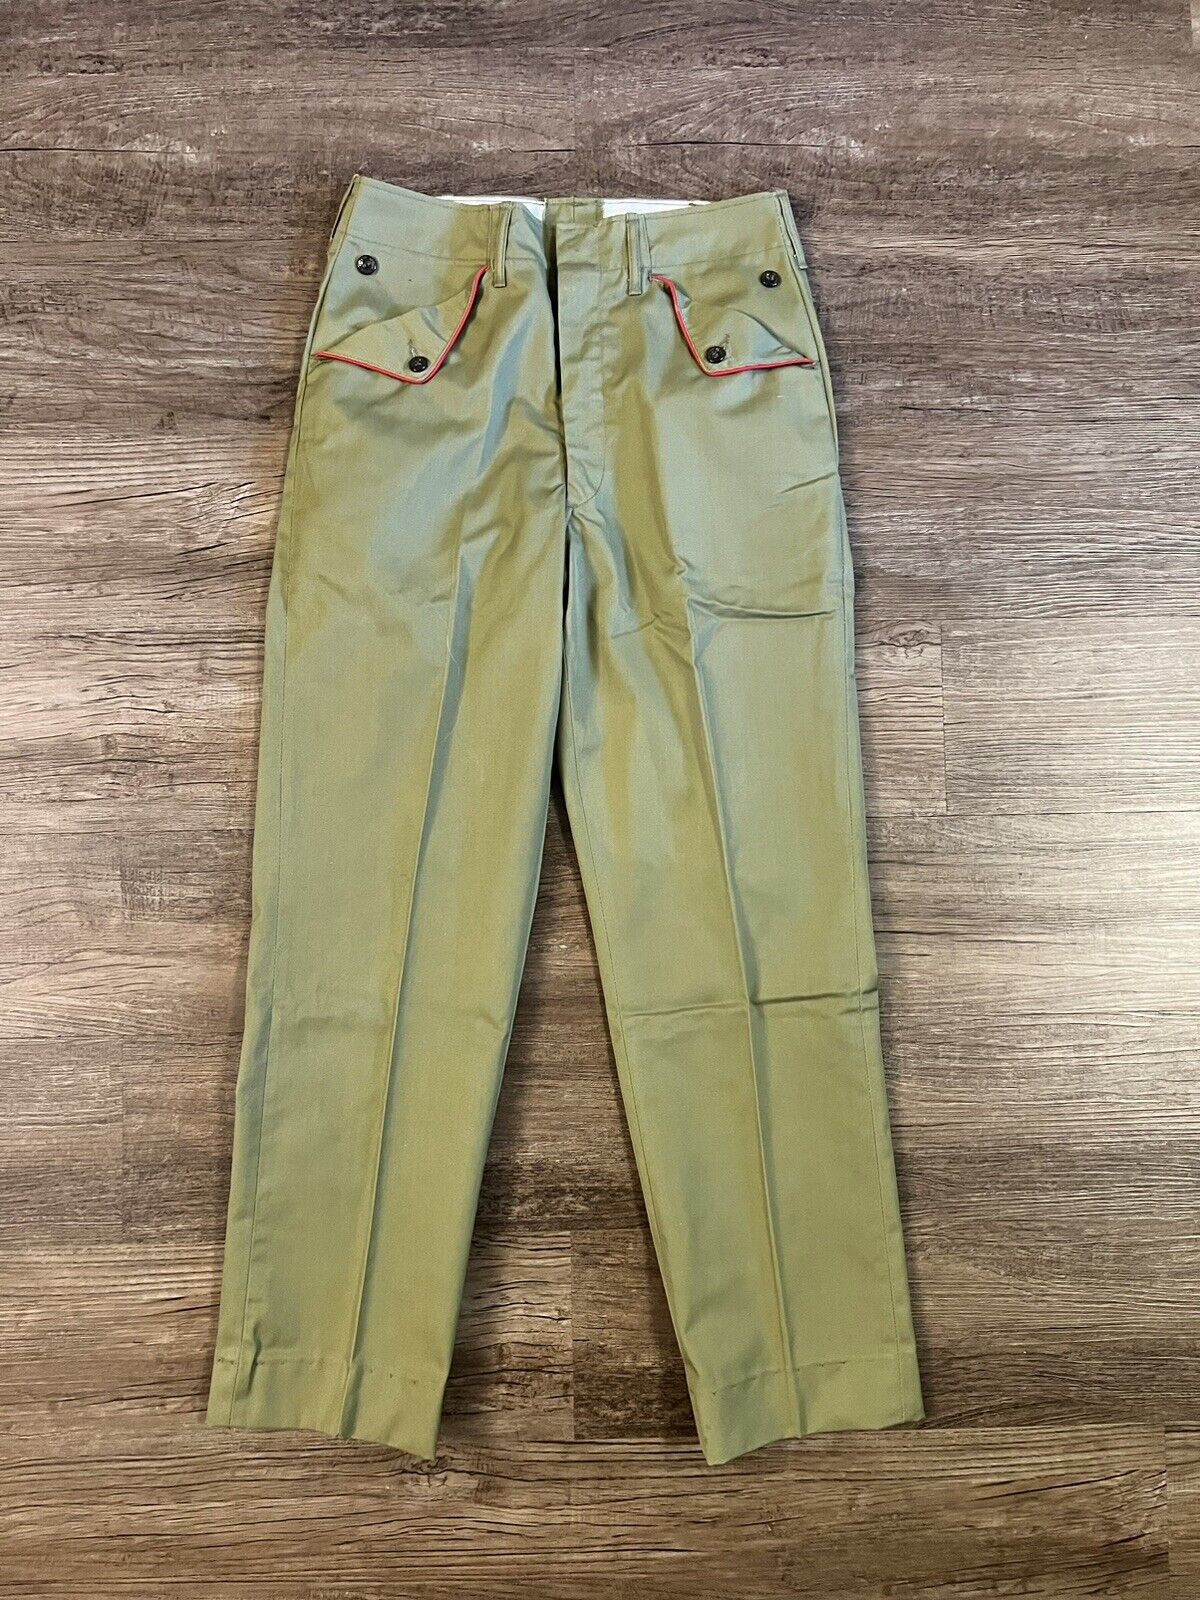 Vintage 1960s BSA Boy Scouts of America OFFICIAL uniform pants size 28 D15